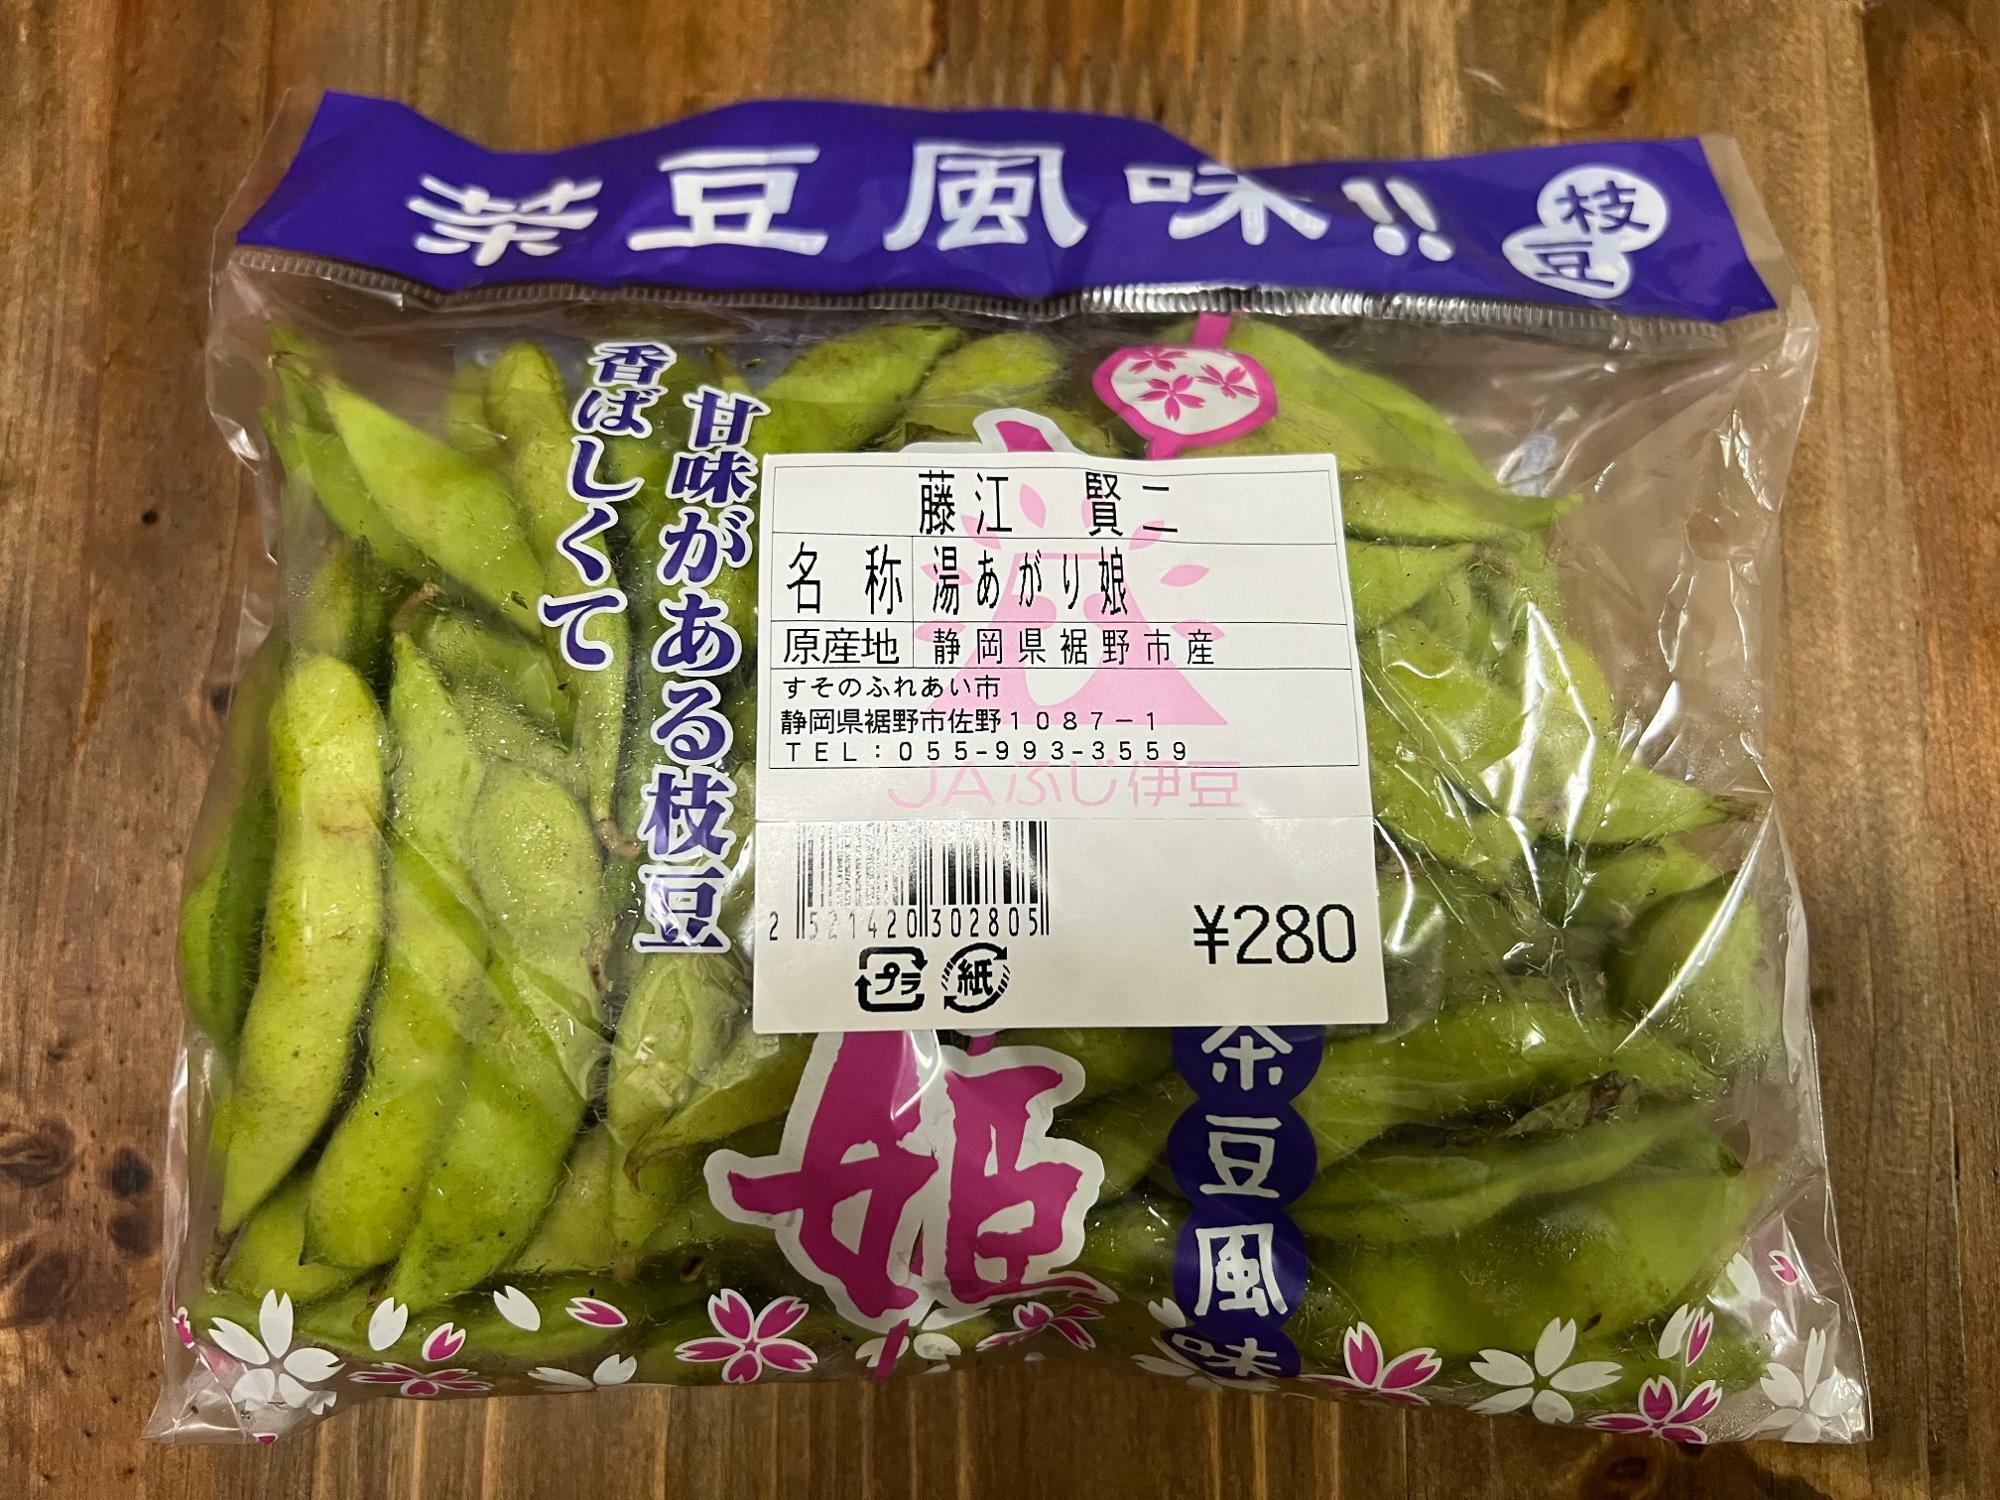 今回は藤江さんの枝豆を購入させていただきました！